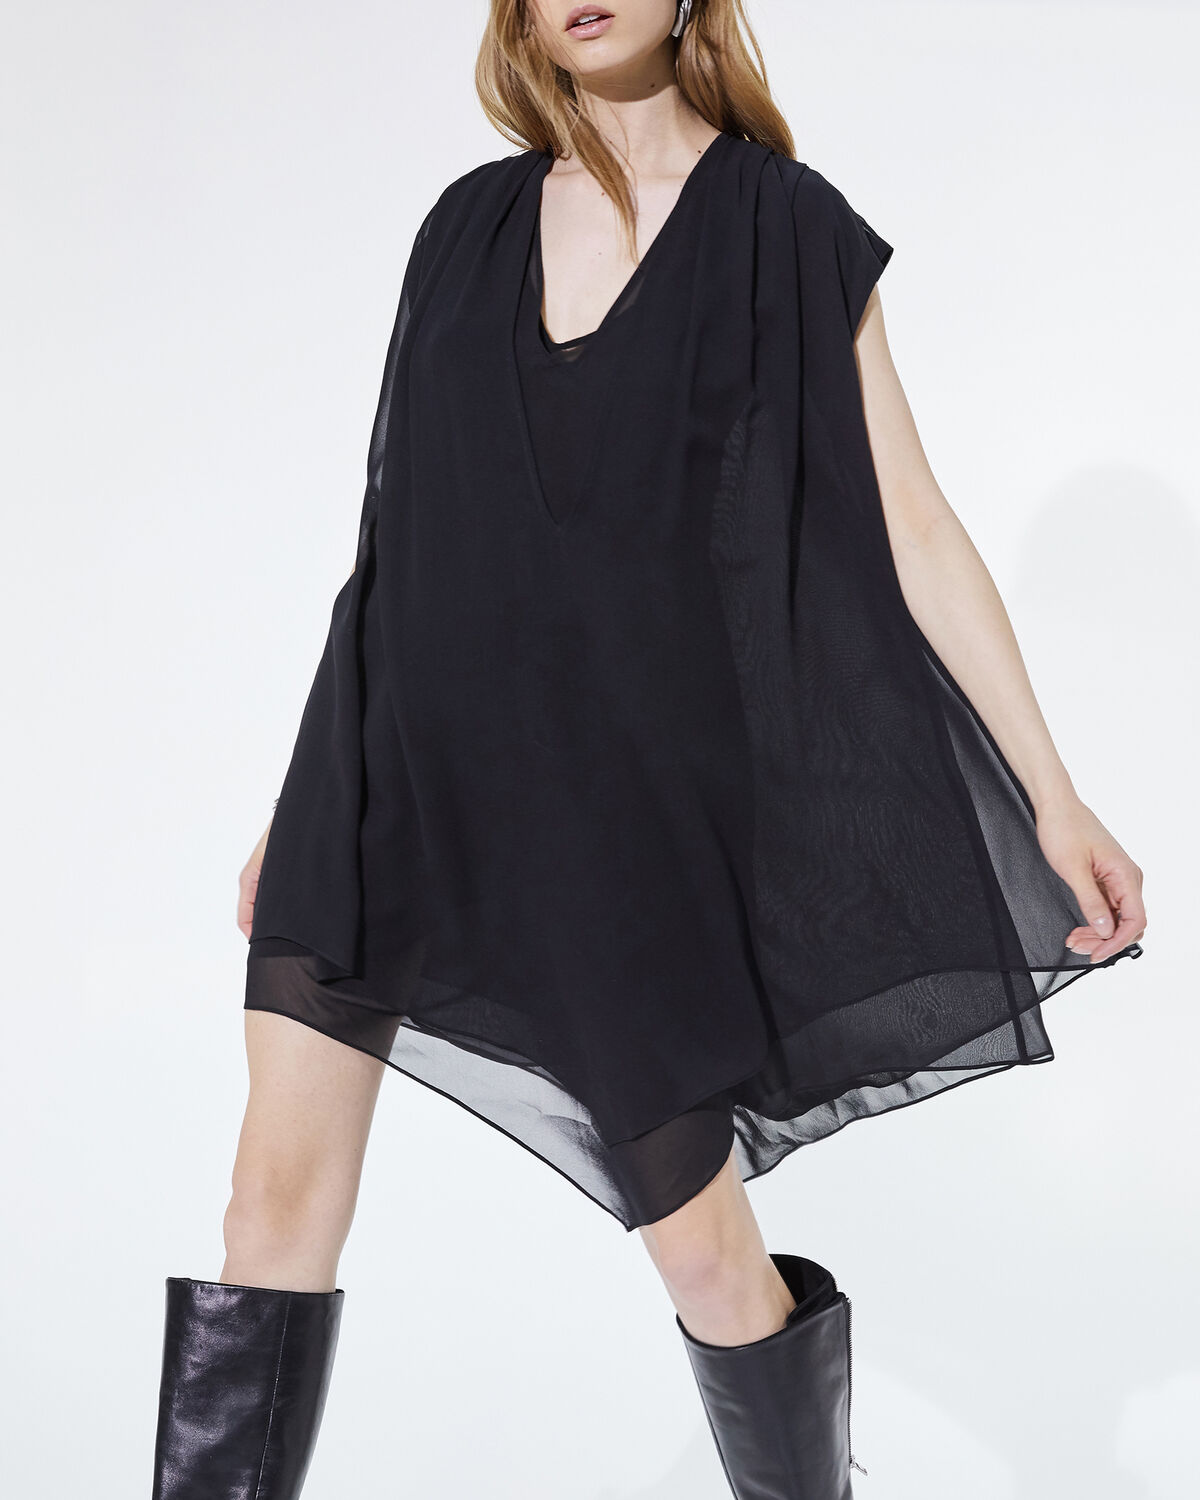 Desvio Dress Black by IRO Paris